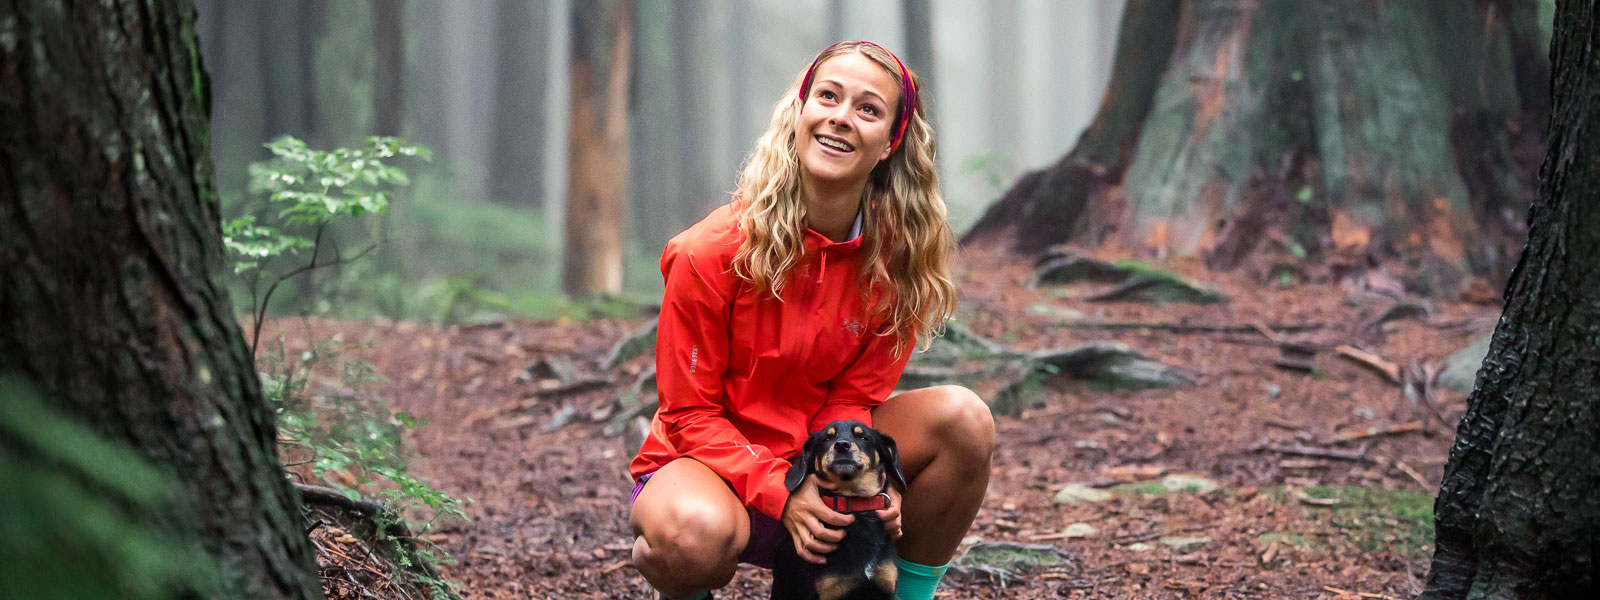 Vrouw met een rood lopende jas en hoofdband houdt haar kleine hond op een bospad en glimlacht